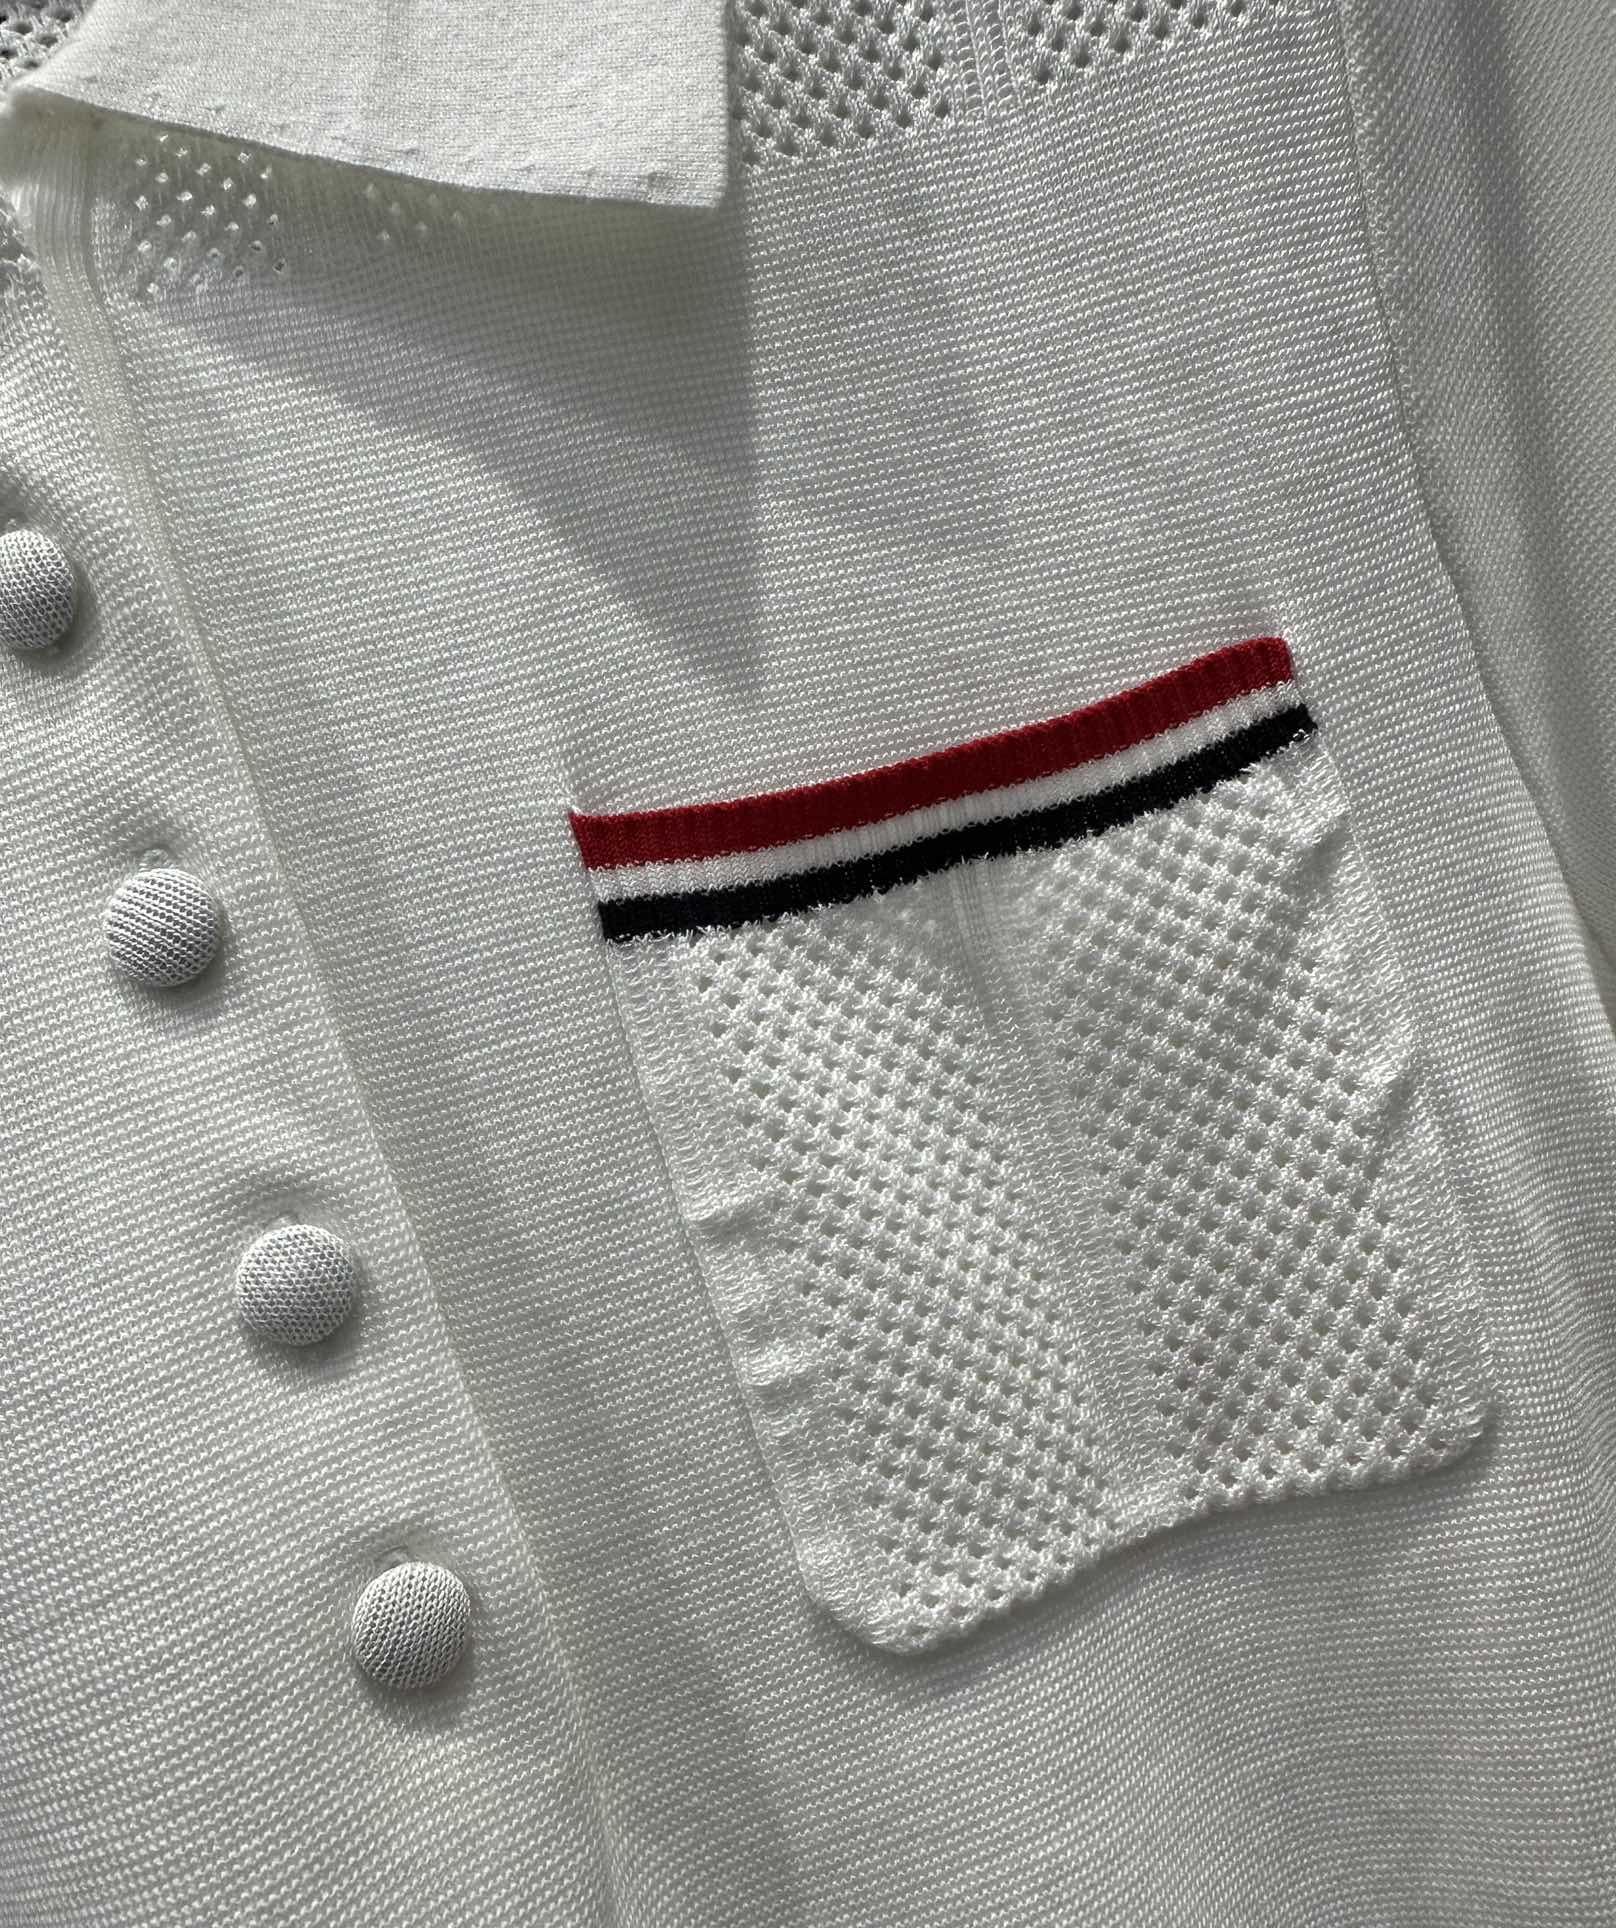 原单品质️ThomBrown*24新品polo短袖上衣订纺纱线质感超赞经典标志性辨识度极高完美做工品质看